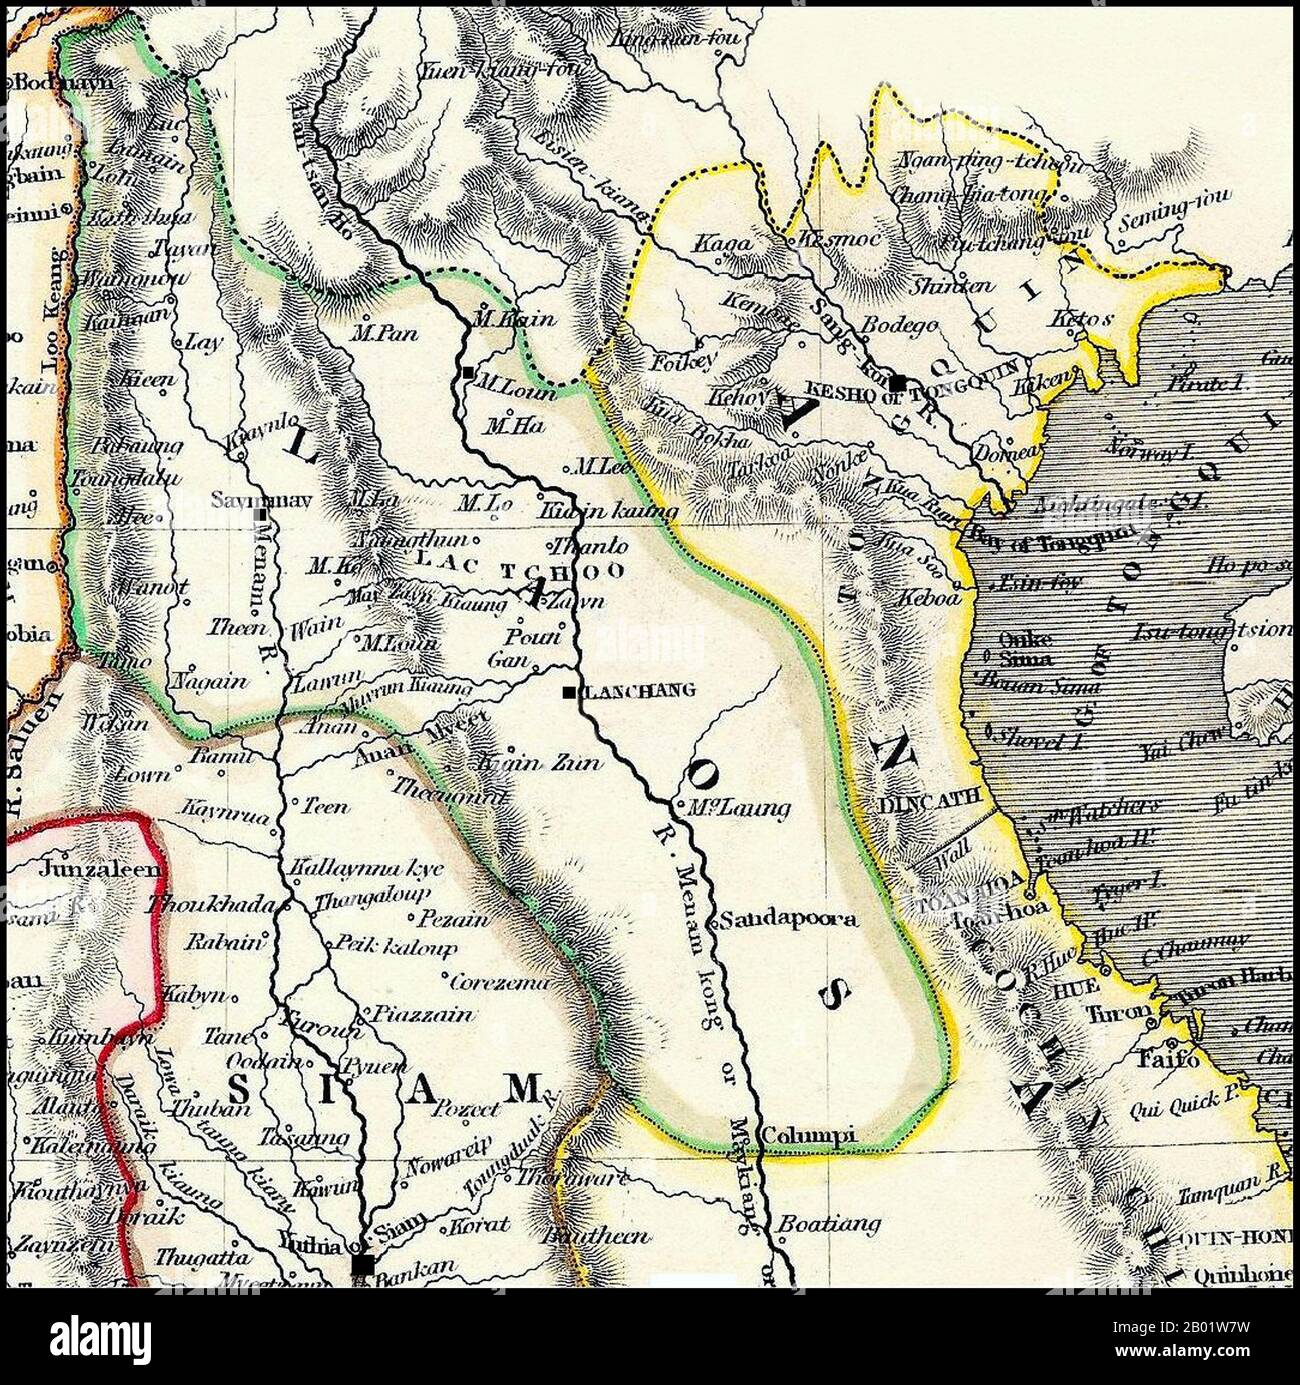 Thailandia/Laos: Dettaglio di una cartina di Siam, Laos e Tonchino, c. 1825. Il Laos comprende sia il regno LAN Na, con la sua capitale a "Saymamay" (Chiang mai), sia il Laos, con la sua capitale a "Lanchang" (Vientiane). Dettaglio di una mappa britannica risalente all'inizio del XIX secolo. La provincia birmana di Tenasserim (rosa) è contrassegnata come britannica e fu conquistata dalla Gran Bretagna dopo la prima guerra anglo-birmana (1824-1826). La geografia è molto imperfetta, le prime squadre di rilevamento britanniche nella "Terra del Laos" non vengono inviate fino alle missioni di McLeod e Richardson (1836-1837). Foto Stock